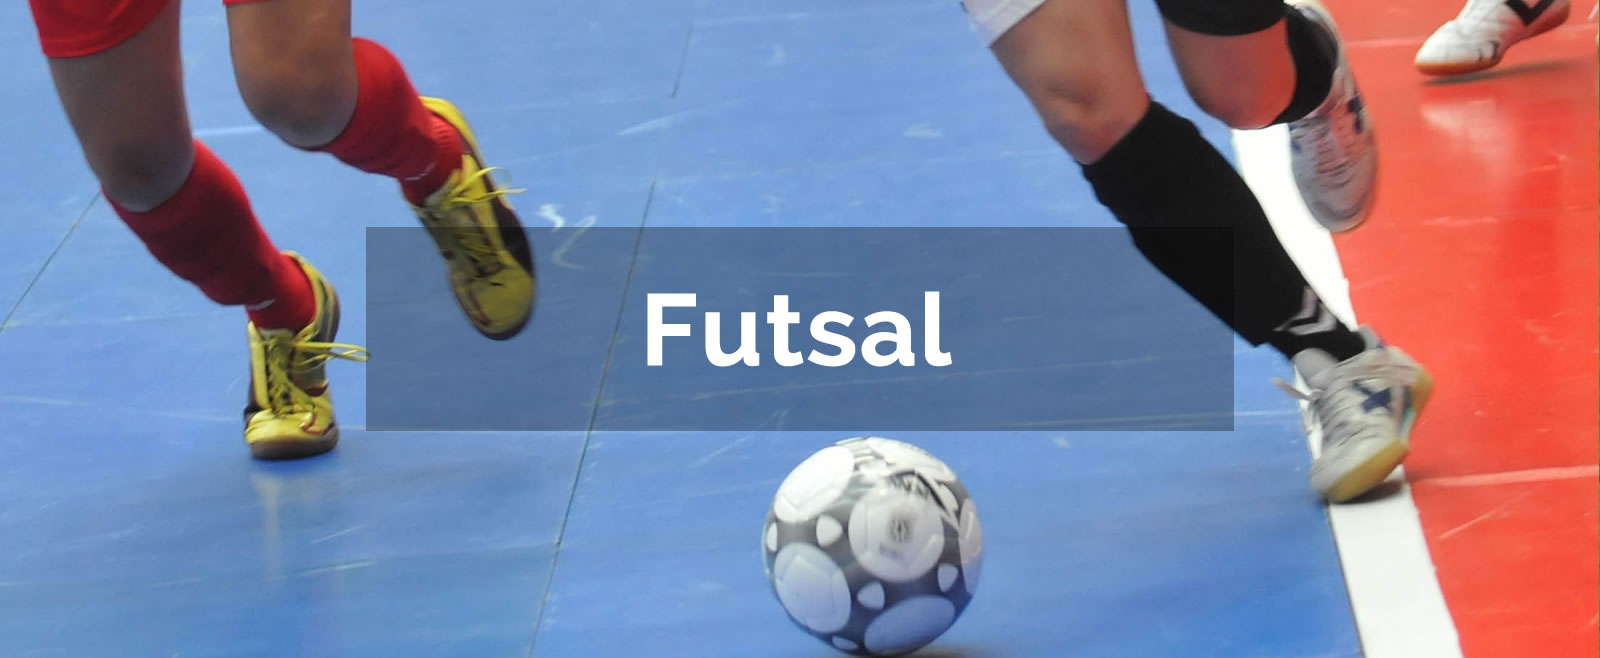 Liga Futsal Profesional 2020 Akhirnya Dilanjutkan Mulai Februari 2021